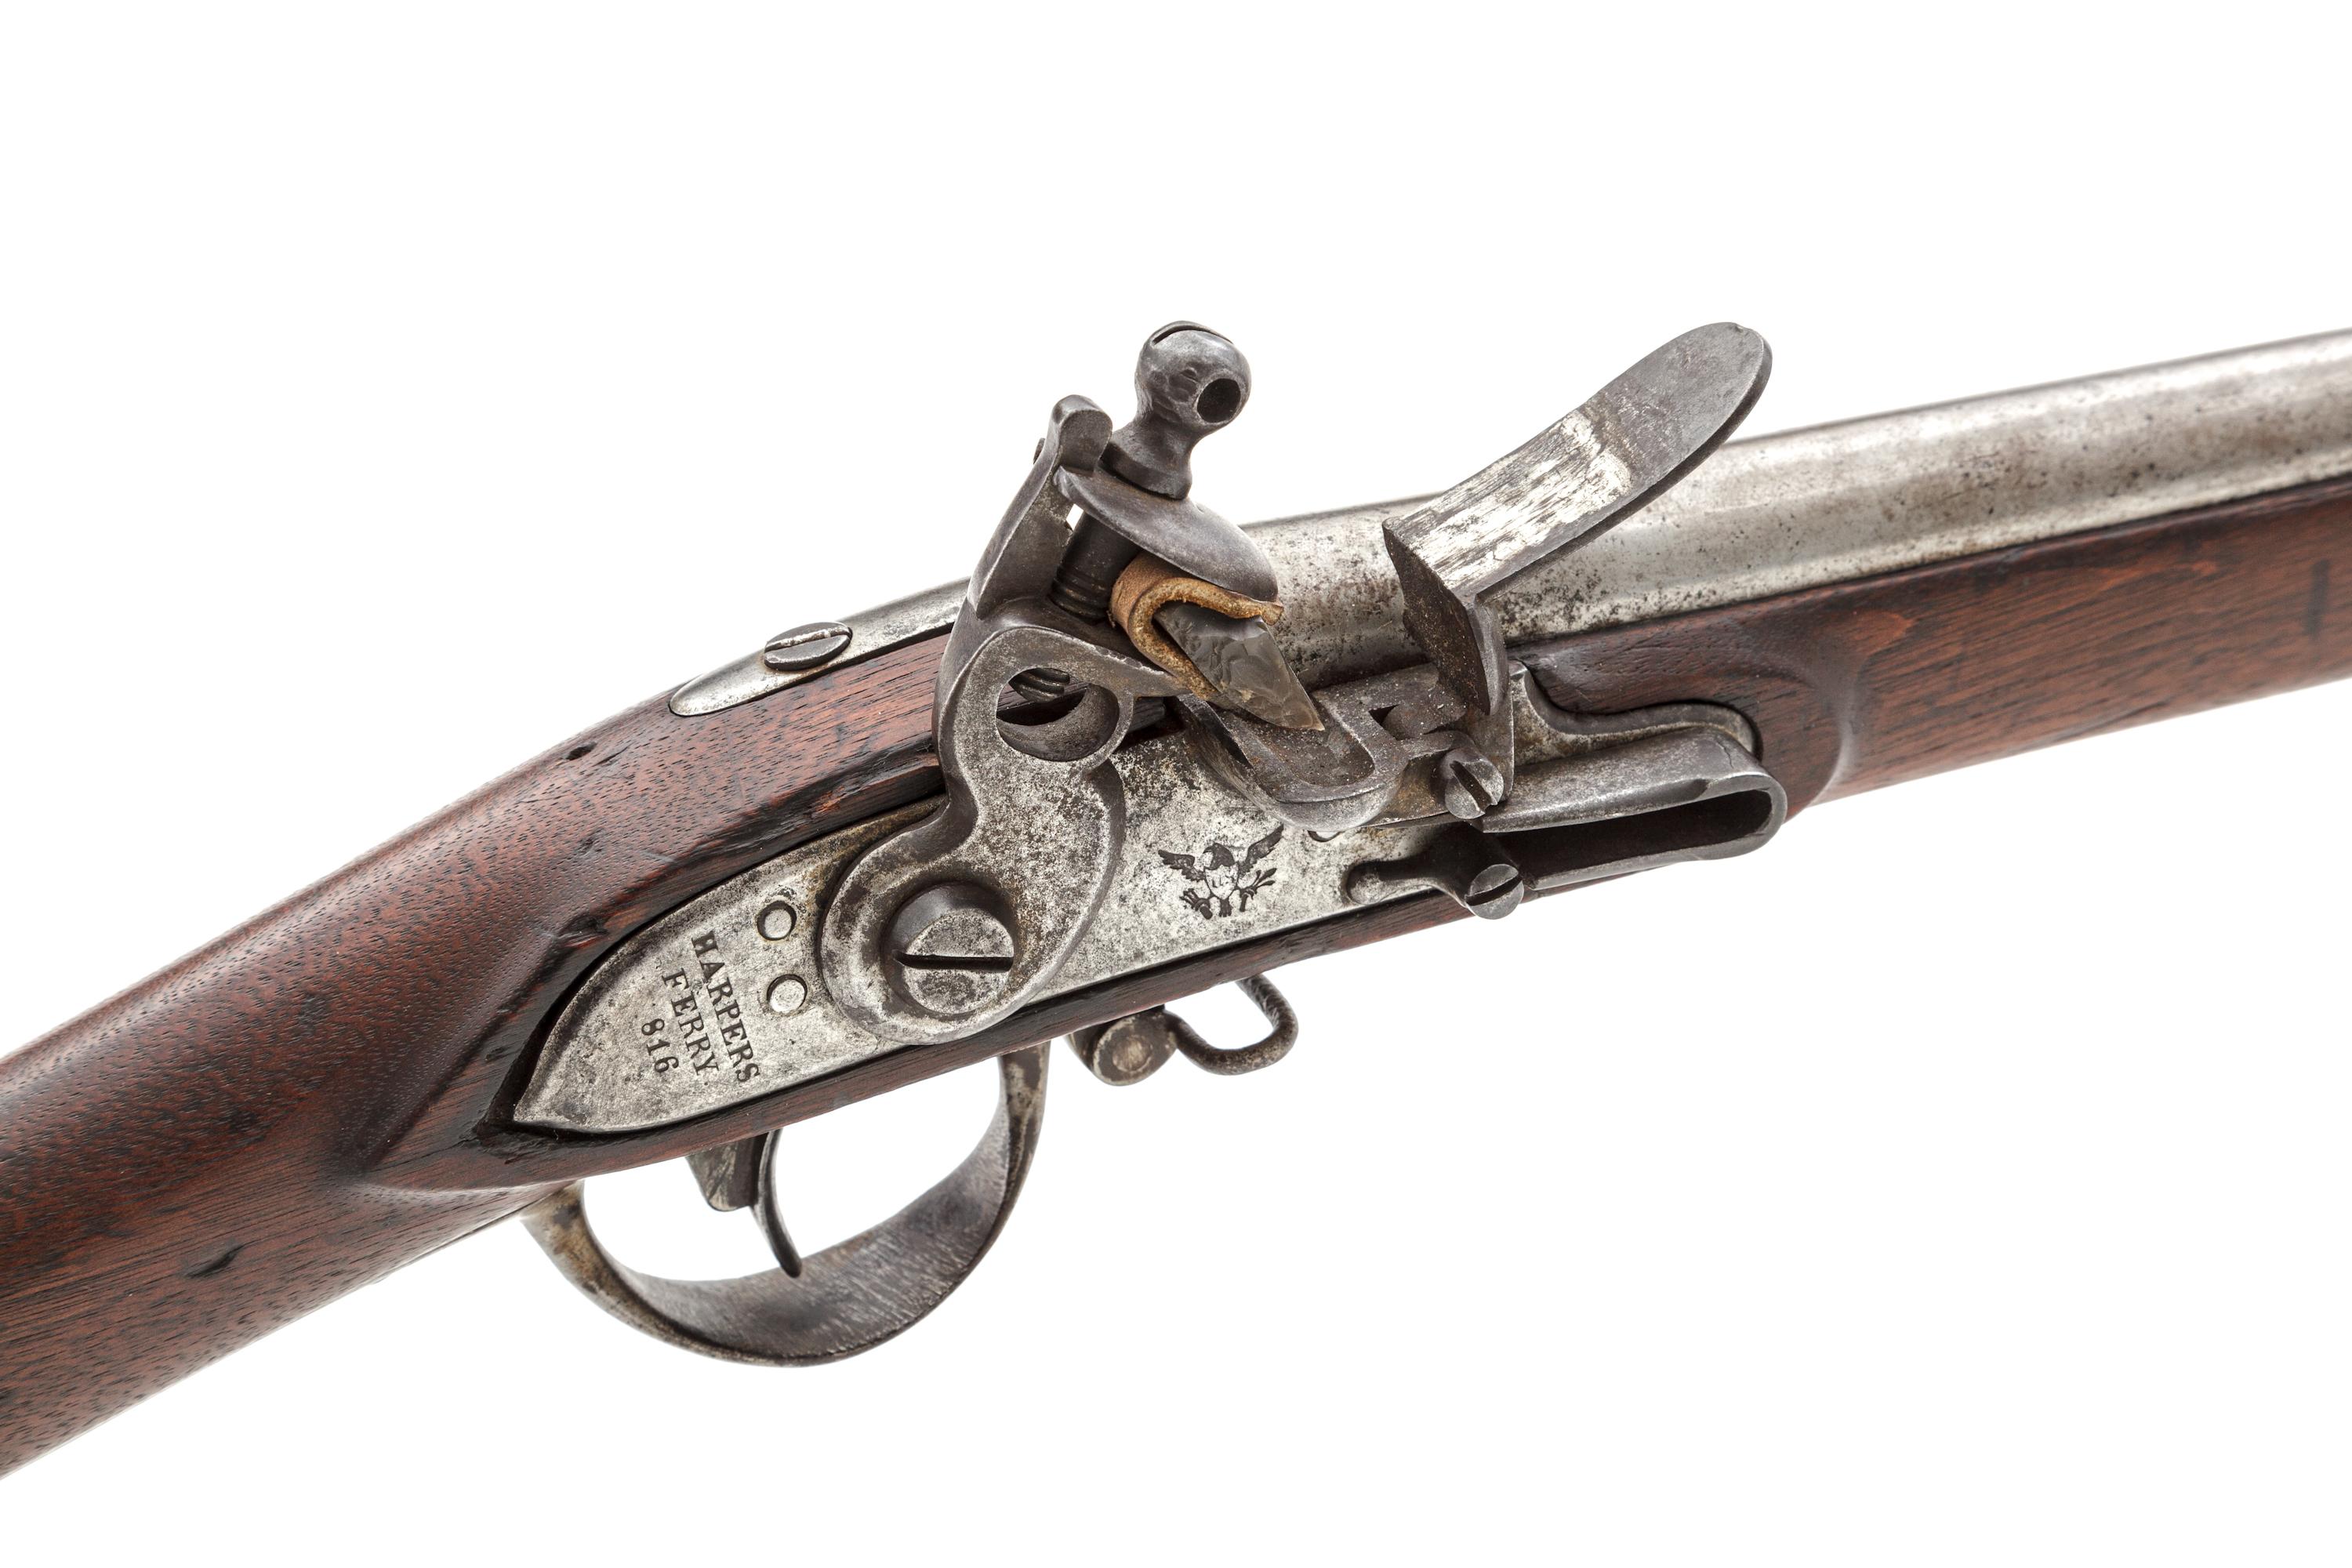 Harpers Ferry Model 1816 Flintlock Infantry Musket